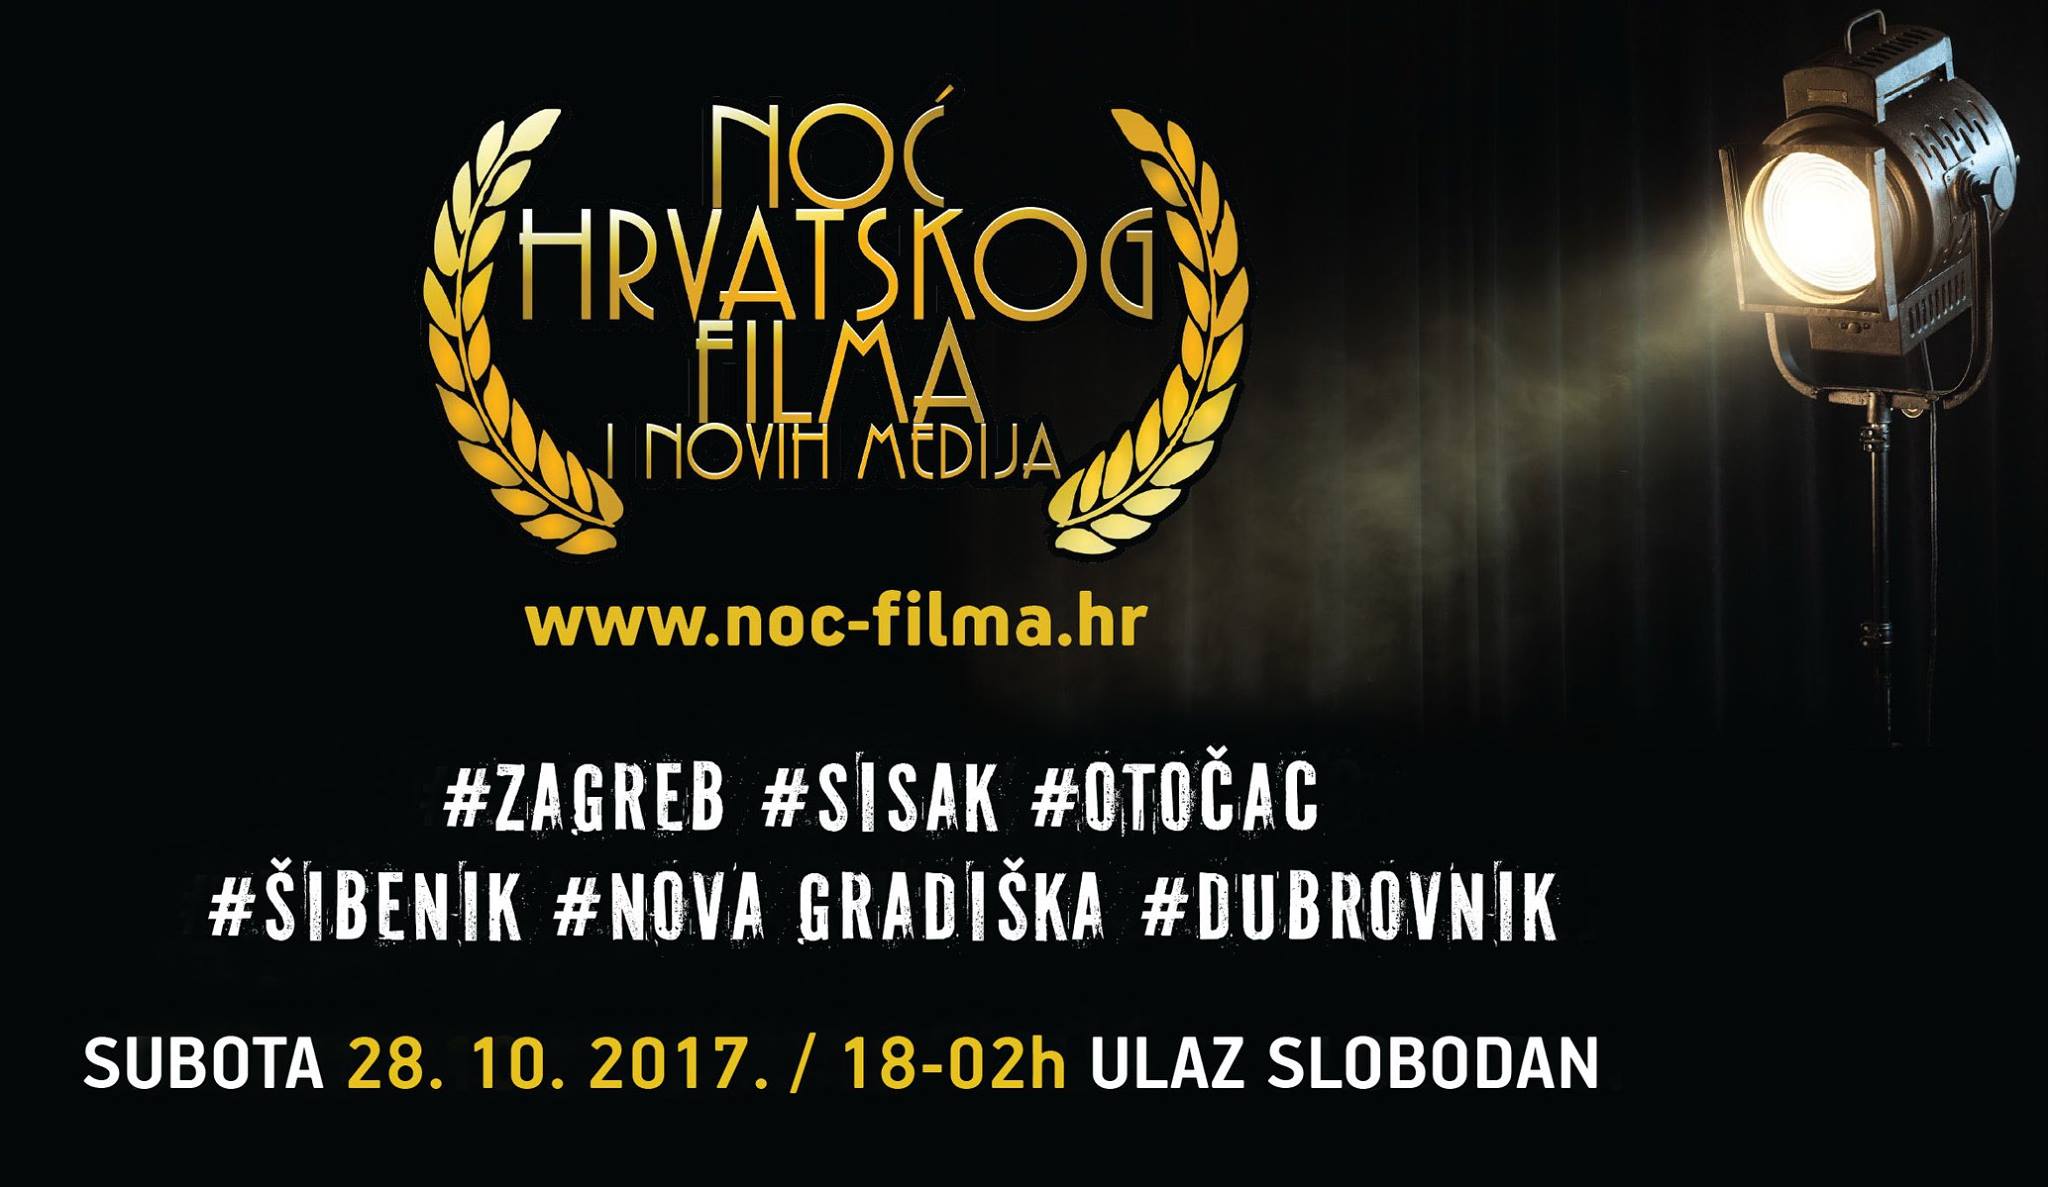 You are currently viewing Noć hrvatskog filma i novih medija